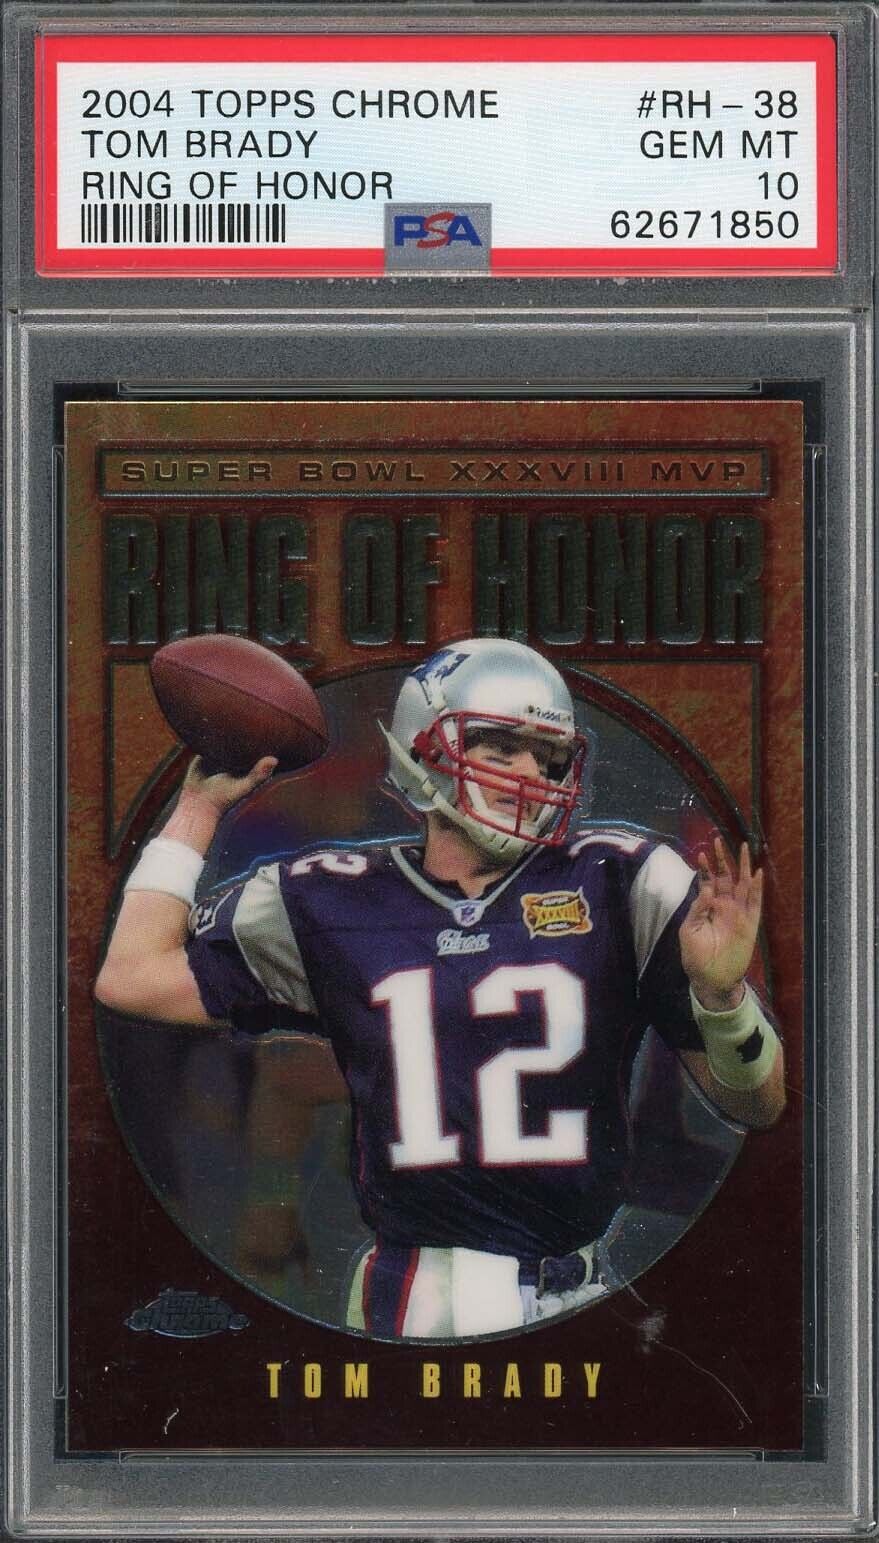 Tom Brady 2004 Topps Chrome Ring Of Honor Football Card #RH-38 Graded PSA 10